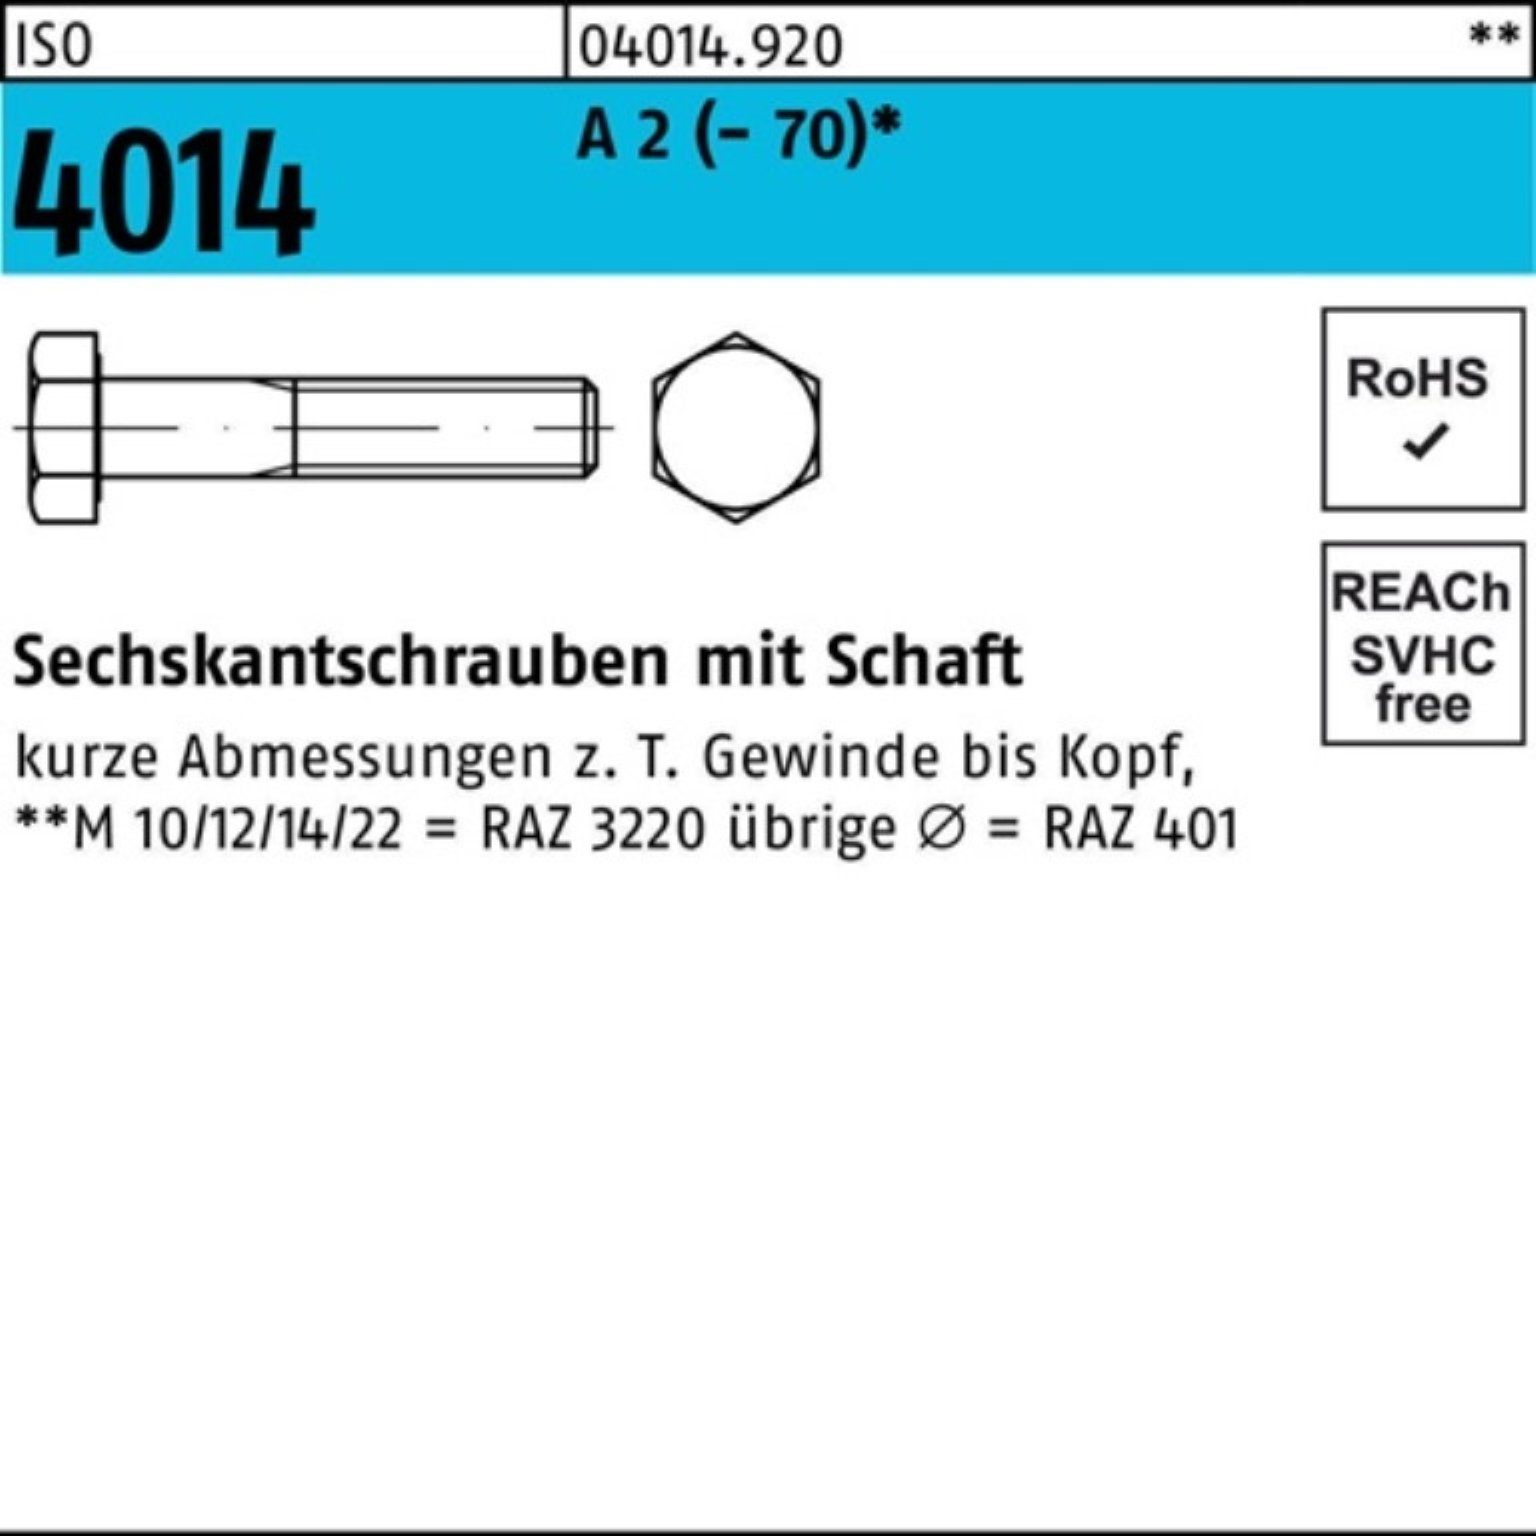 Bufab Sechskantschraube 100er Pack Stü A Schaft 75 2 Sechskantschraube 4014 1 (70) ISO M20x